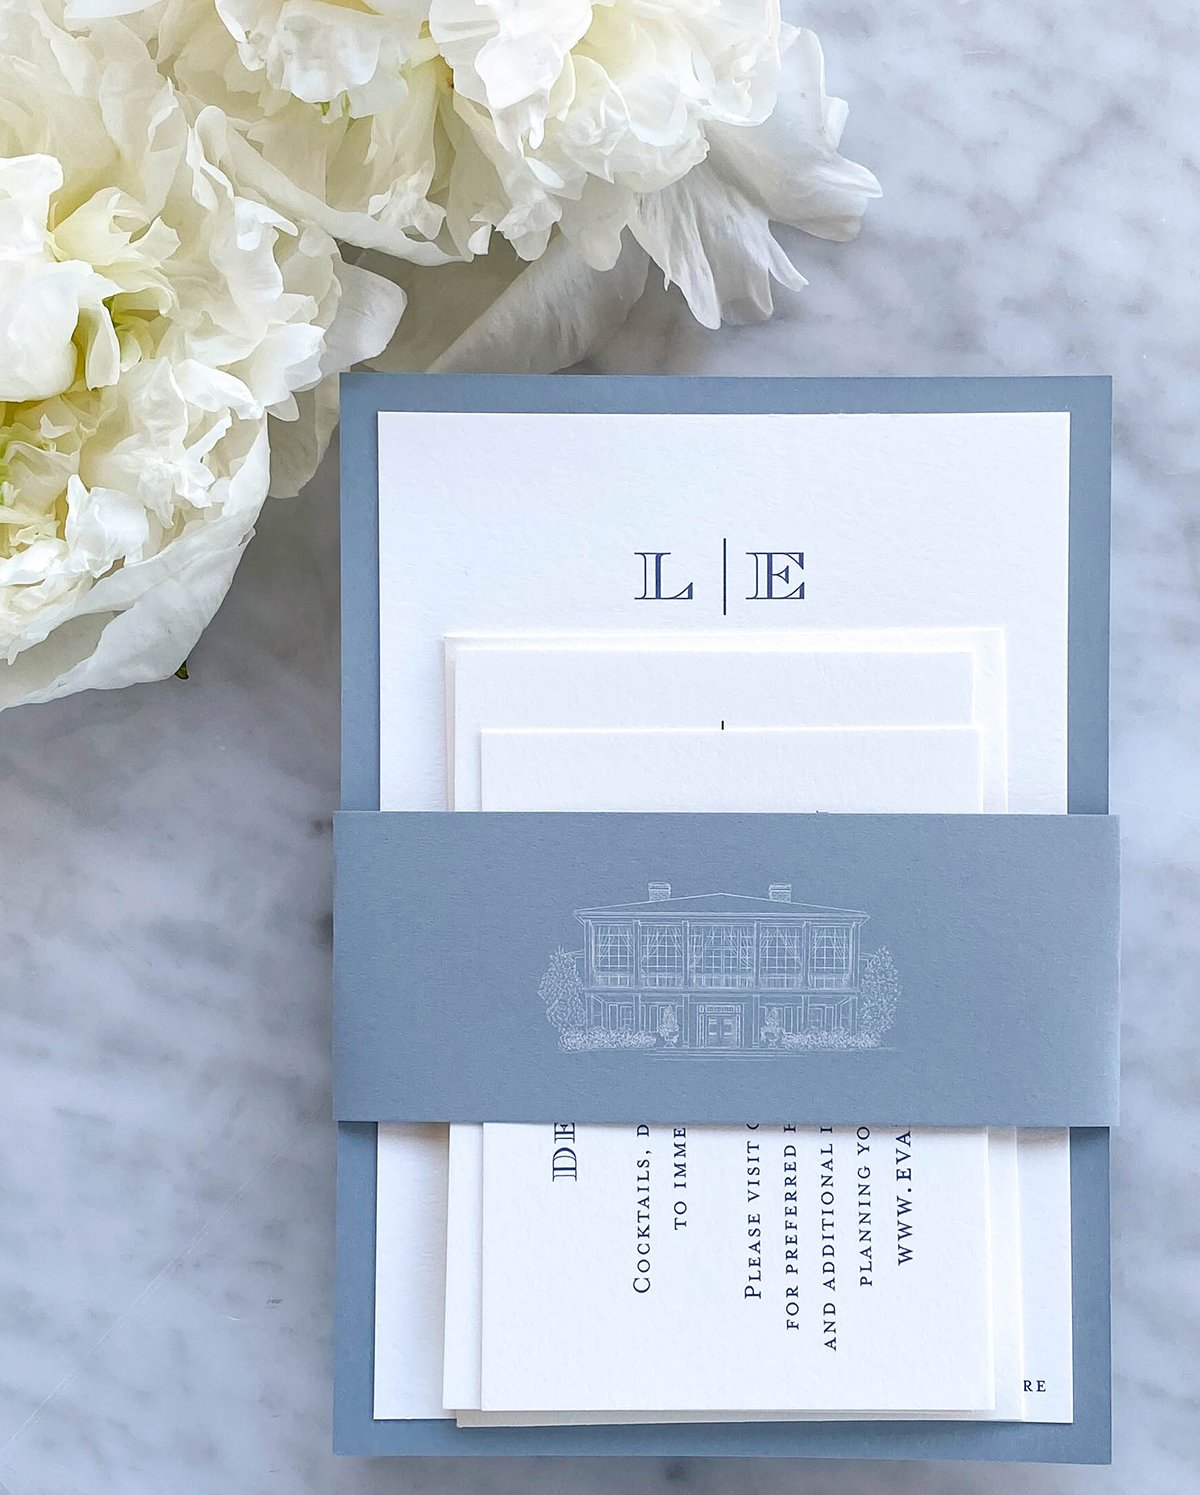 Classic Monogram Letterpress Wedding Invitation - Scotti Cline Designs